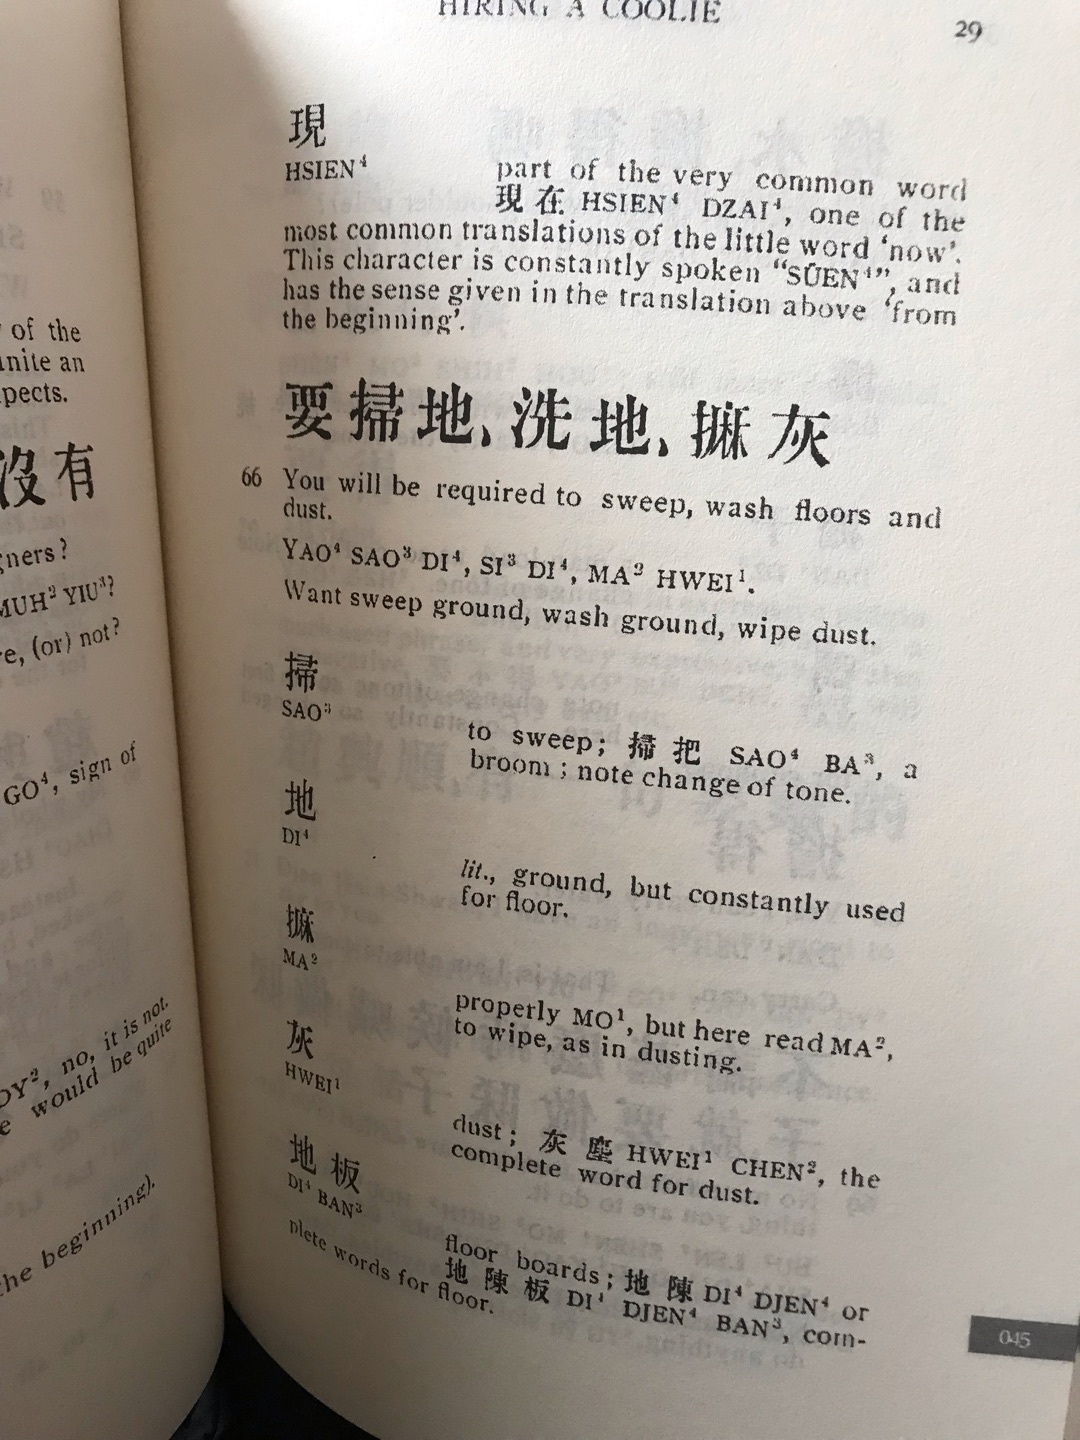 这本书真的太有趣了，四川话和英语还能这么学哈哈哈